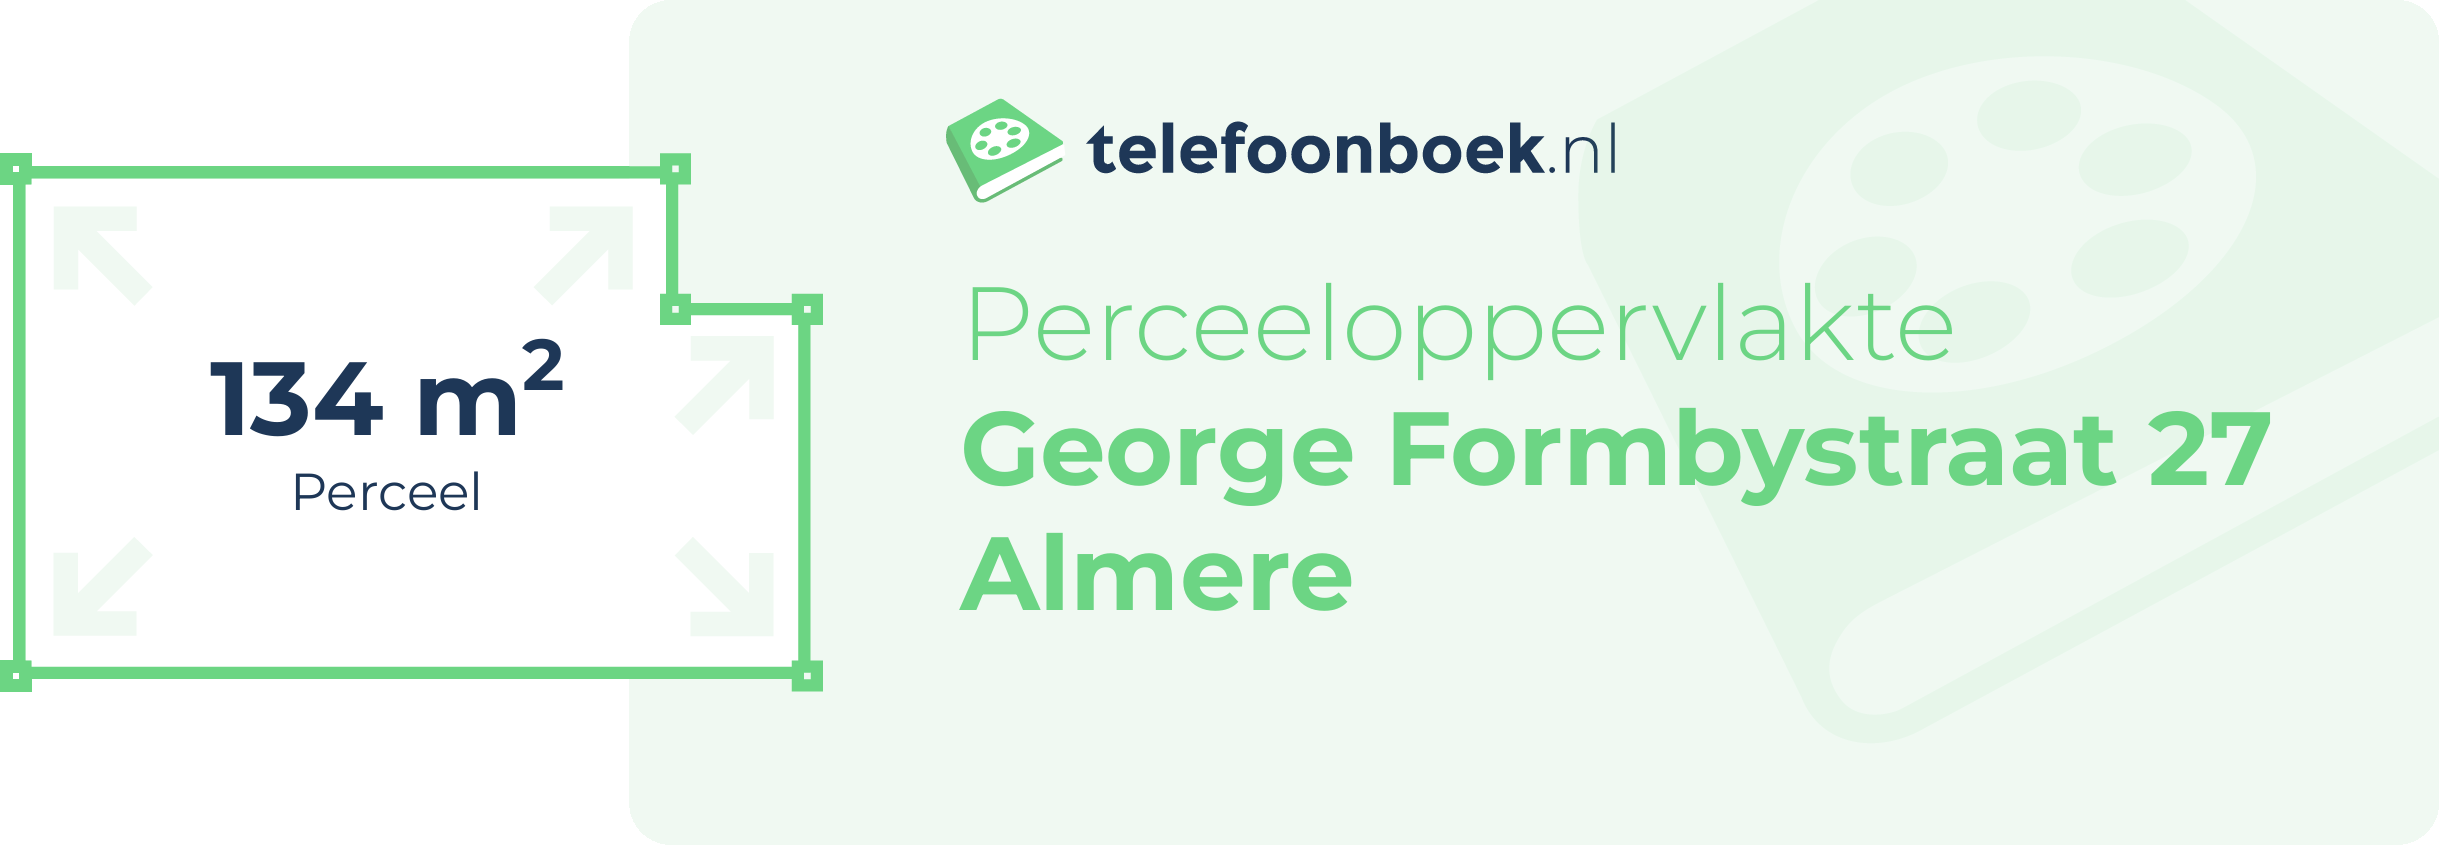 Perceeloppervlakte George Formbystraat 27 Almere